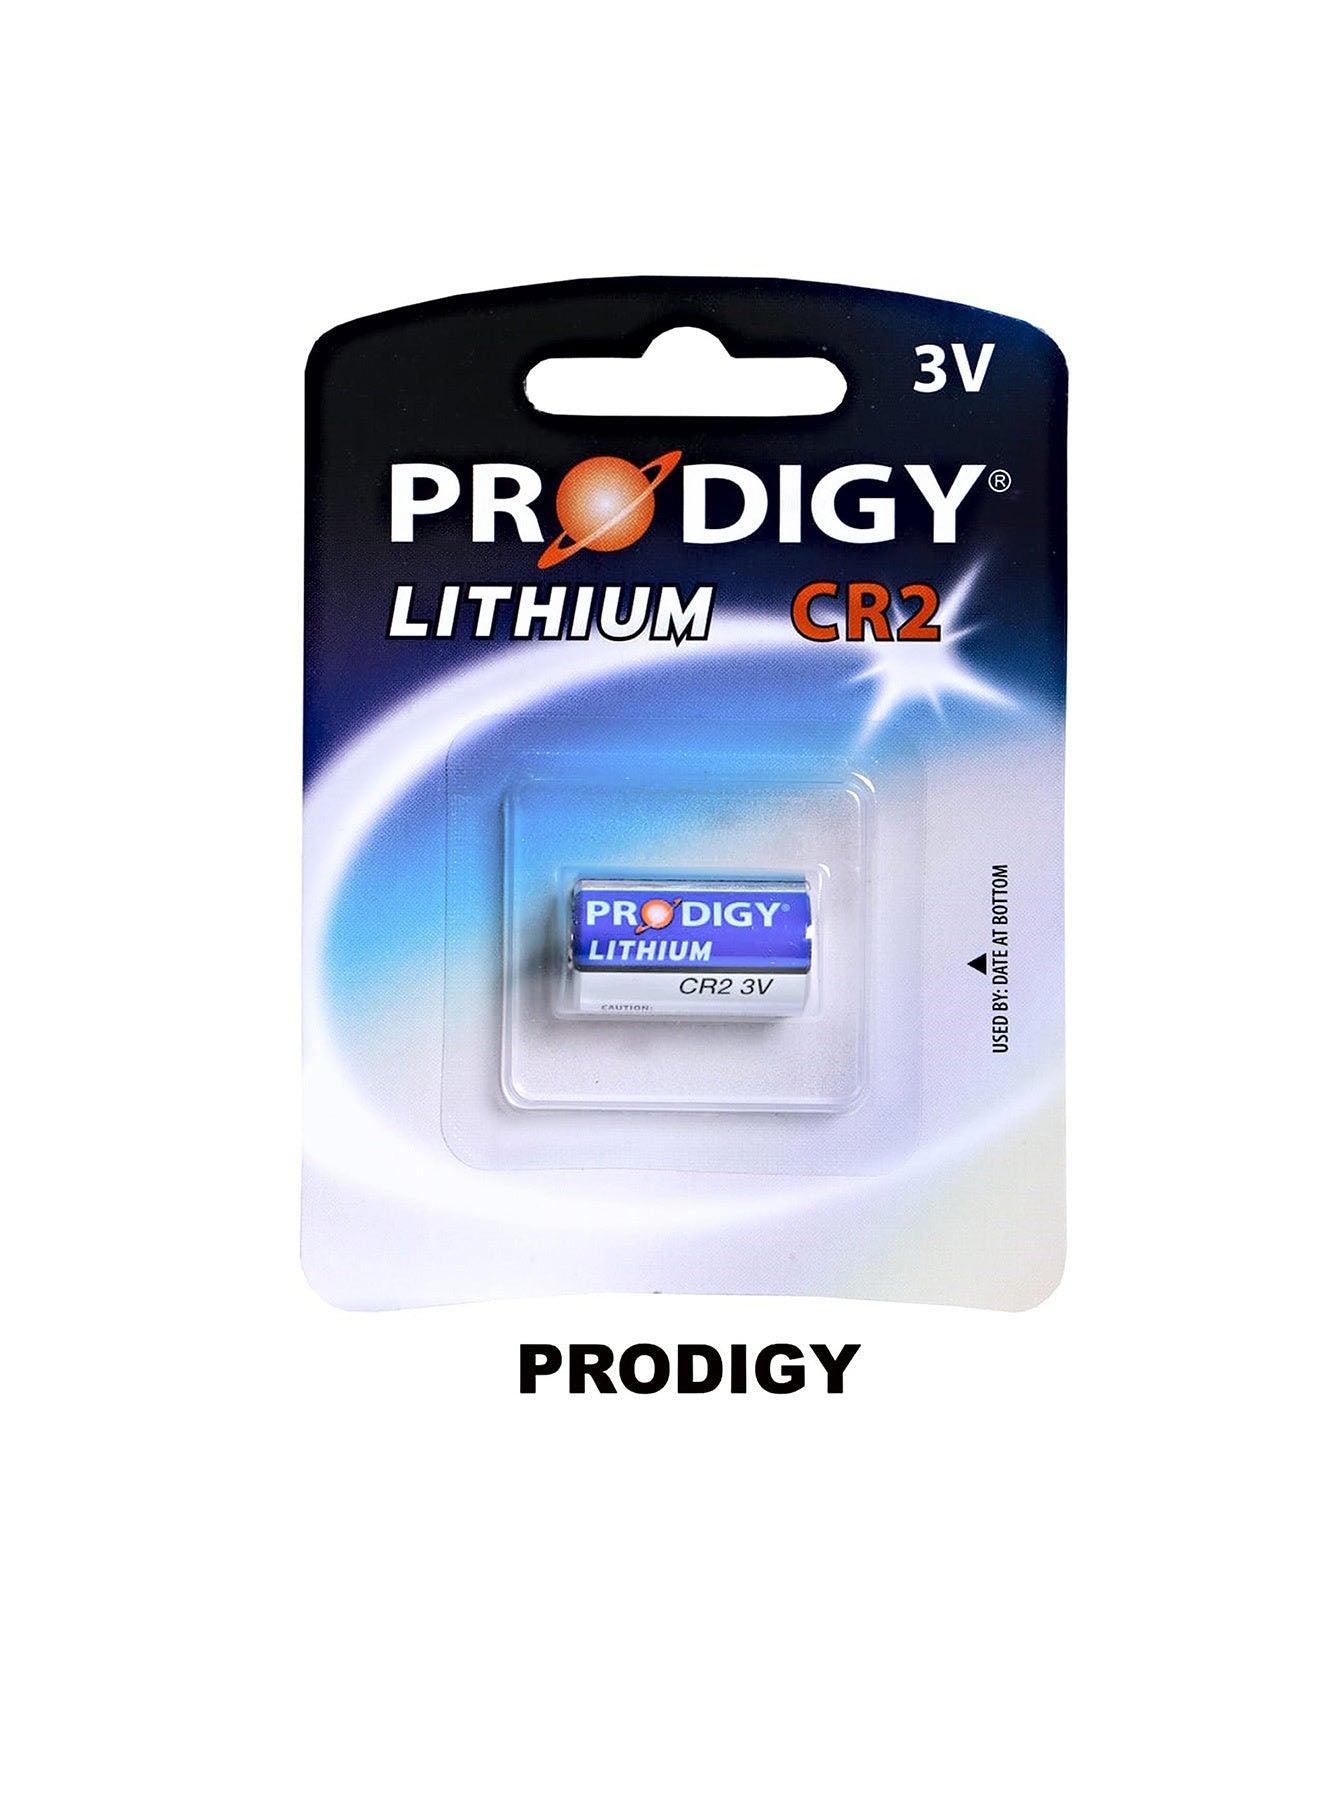 Prodigy Lithium CR2 3V